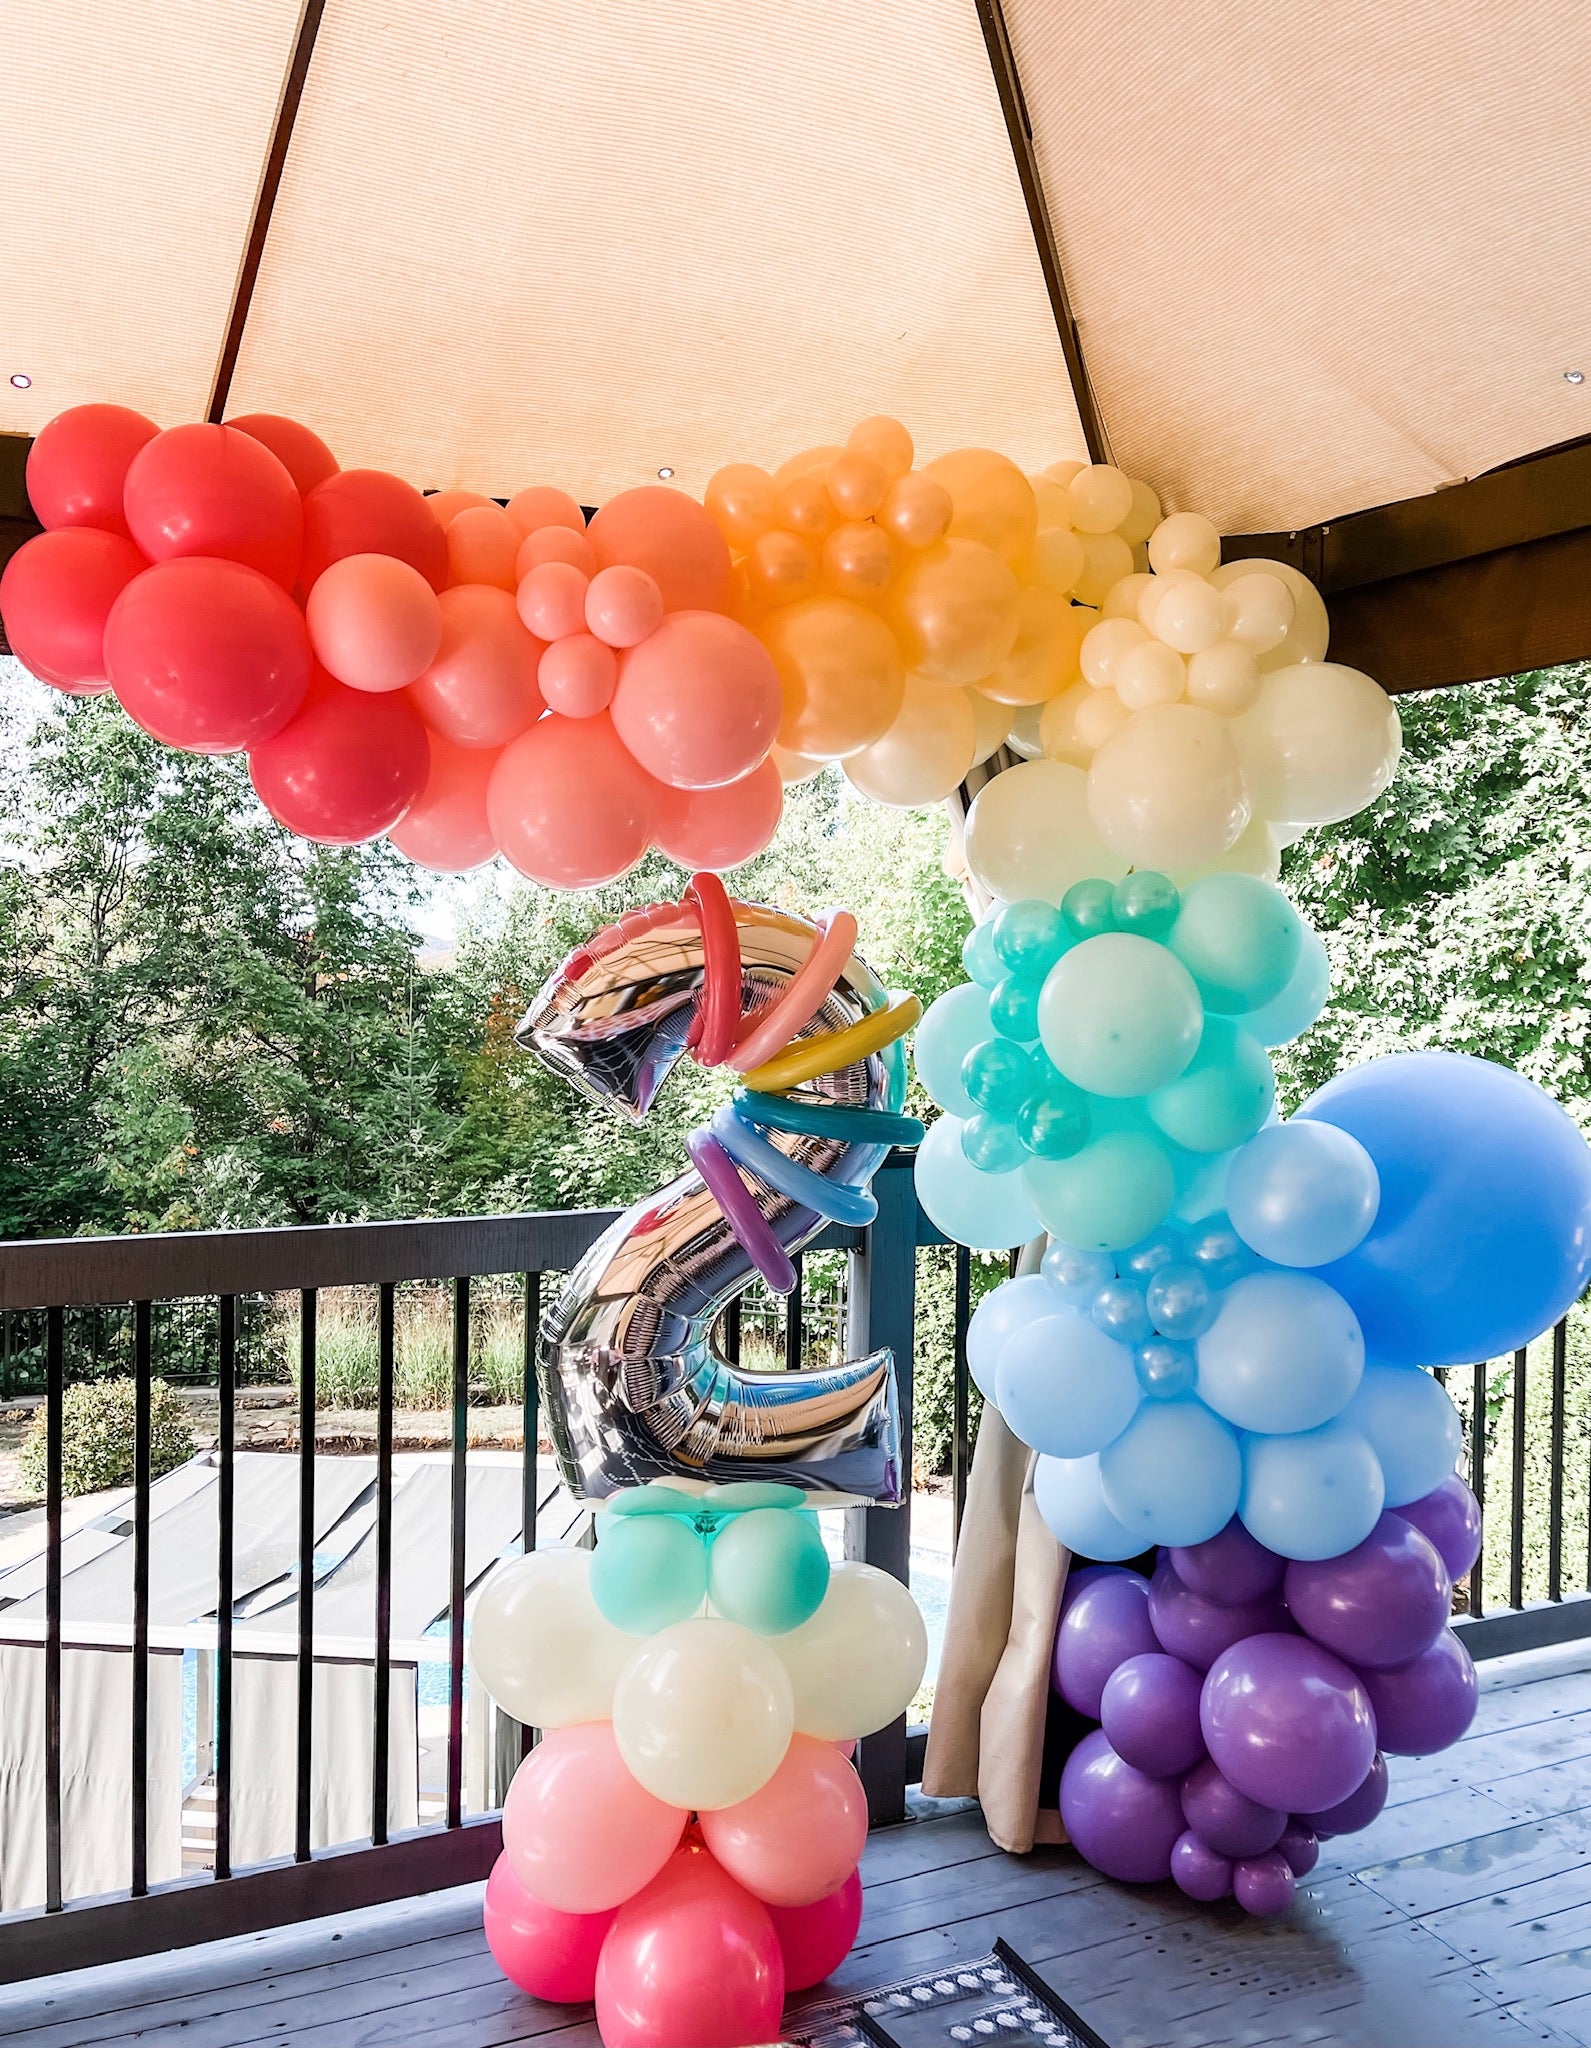 Arche de ballon – La sélection arches de ballons My Little Day